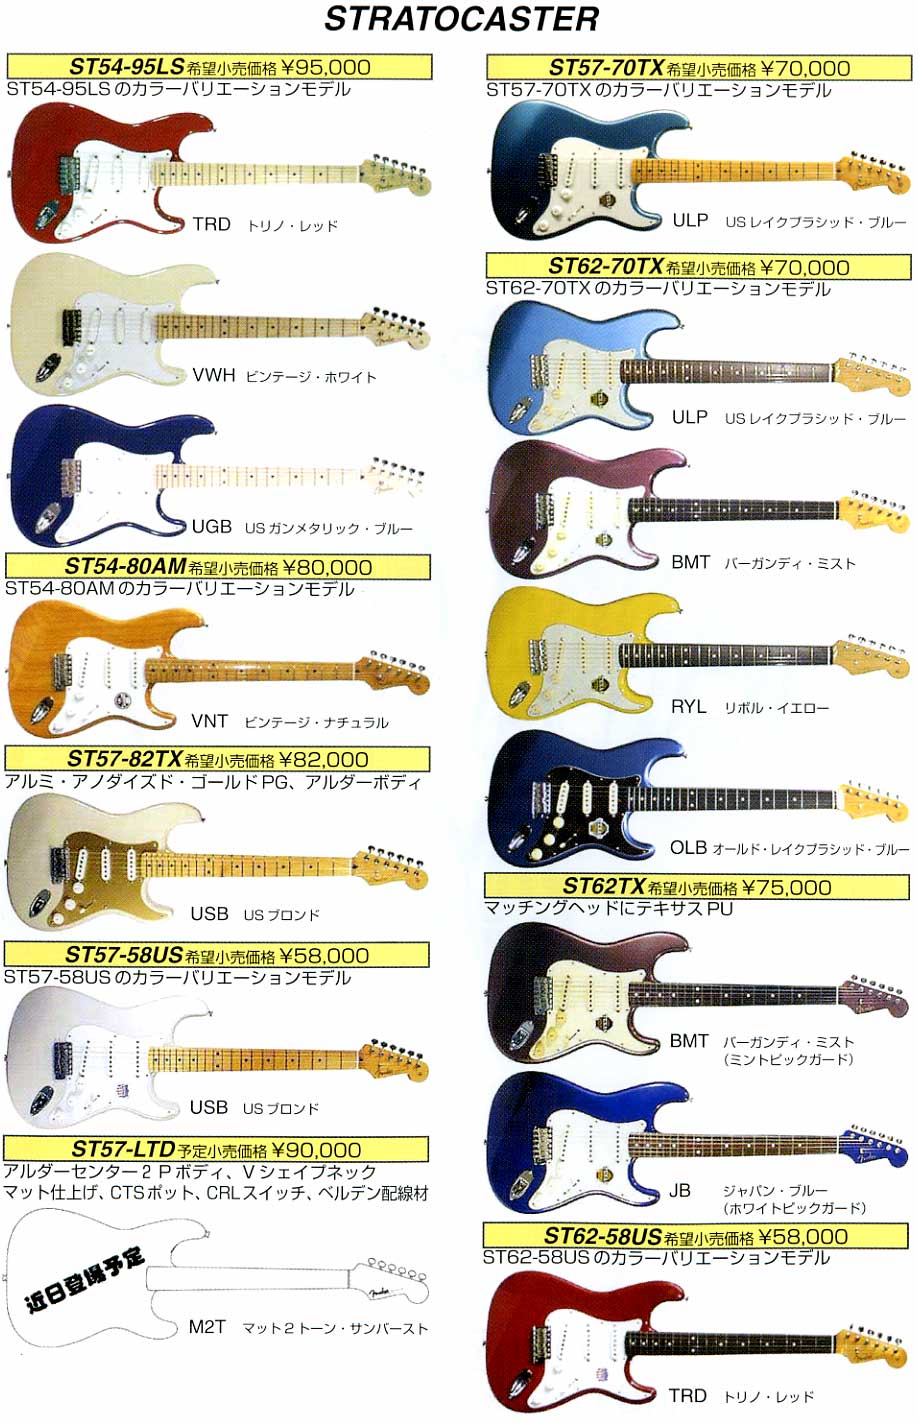 セール最安価格  キャンディレッド MG69 ムスタング FenderJapan エレキギター